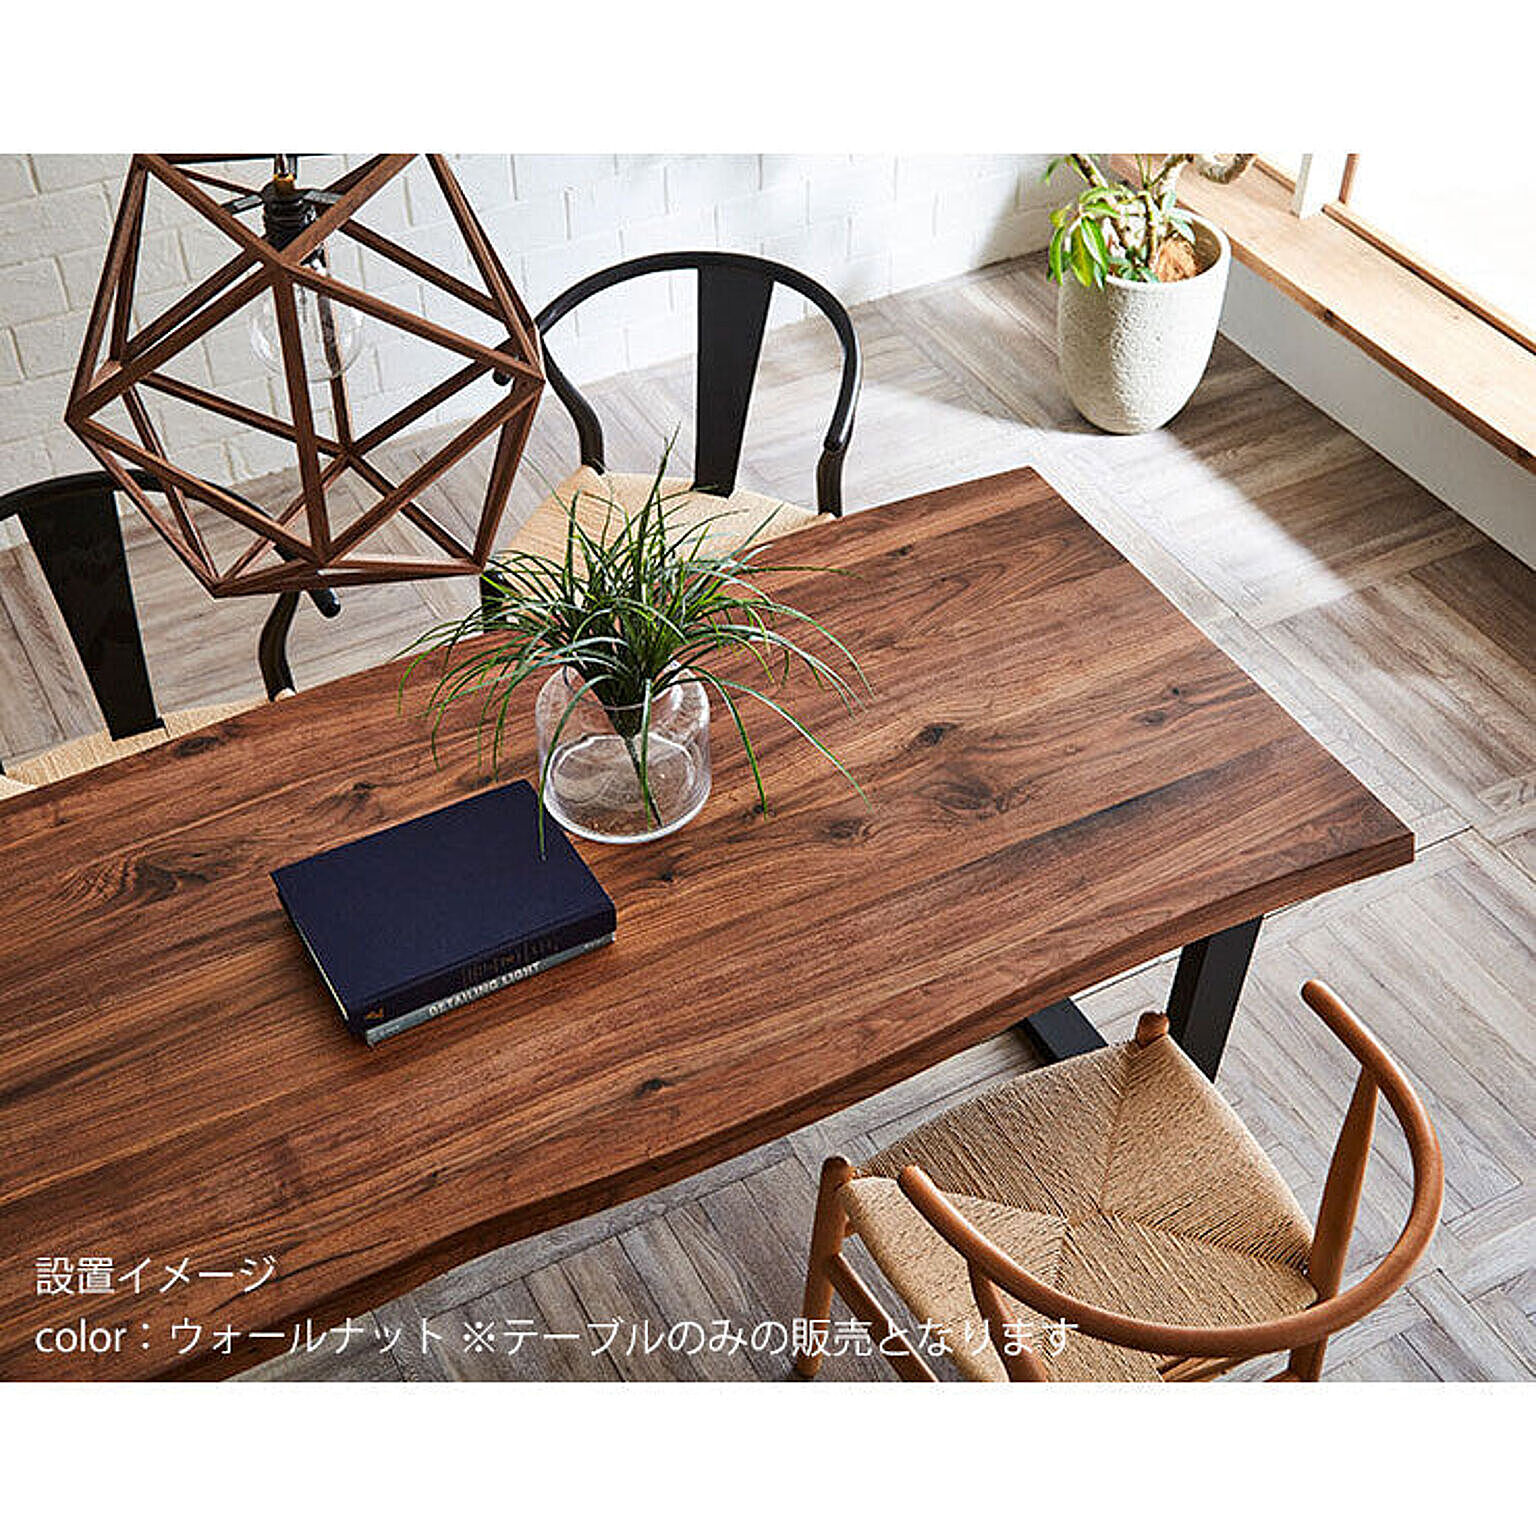 ウォールナット無垢材テーブル 天然木 一枚板風 耳付き 幅210cm